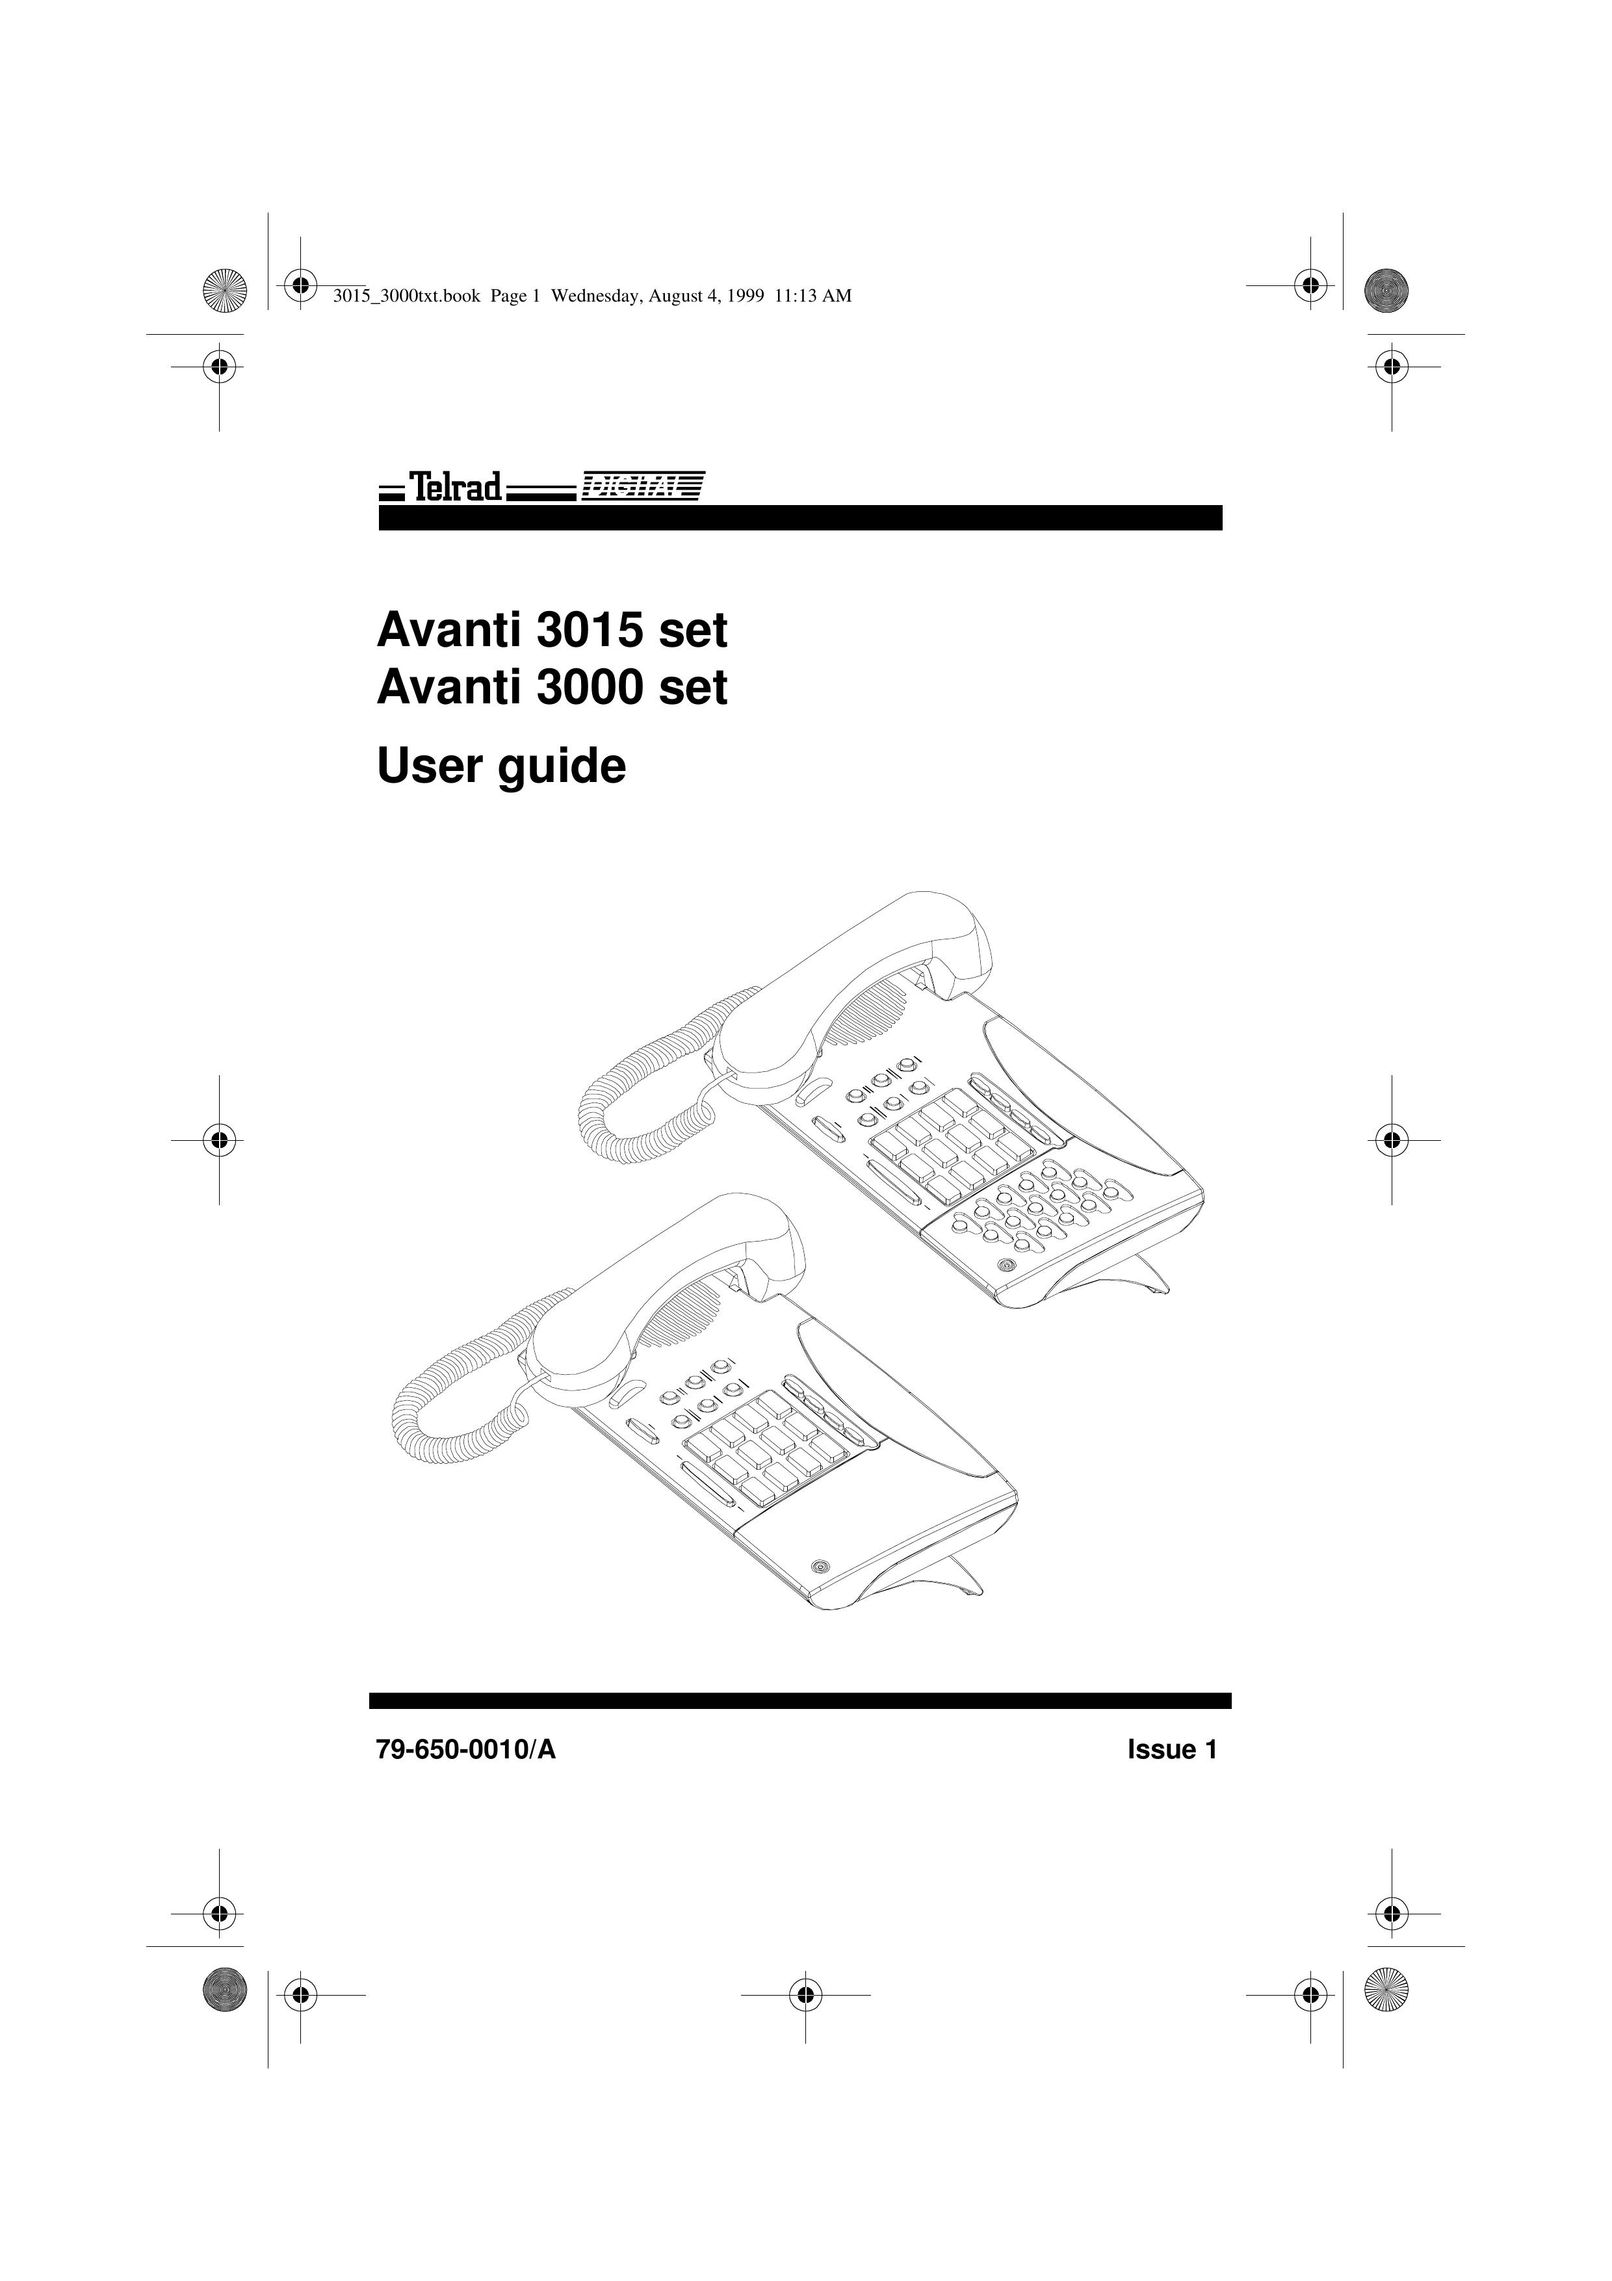 Avanti 3015 IP Phone User Manual